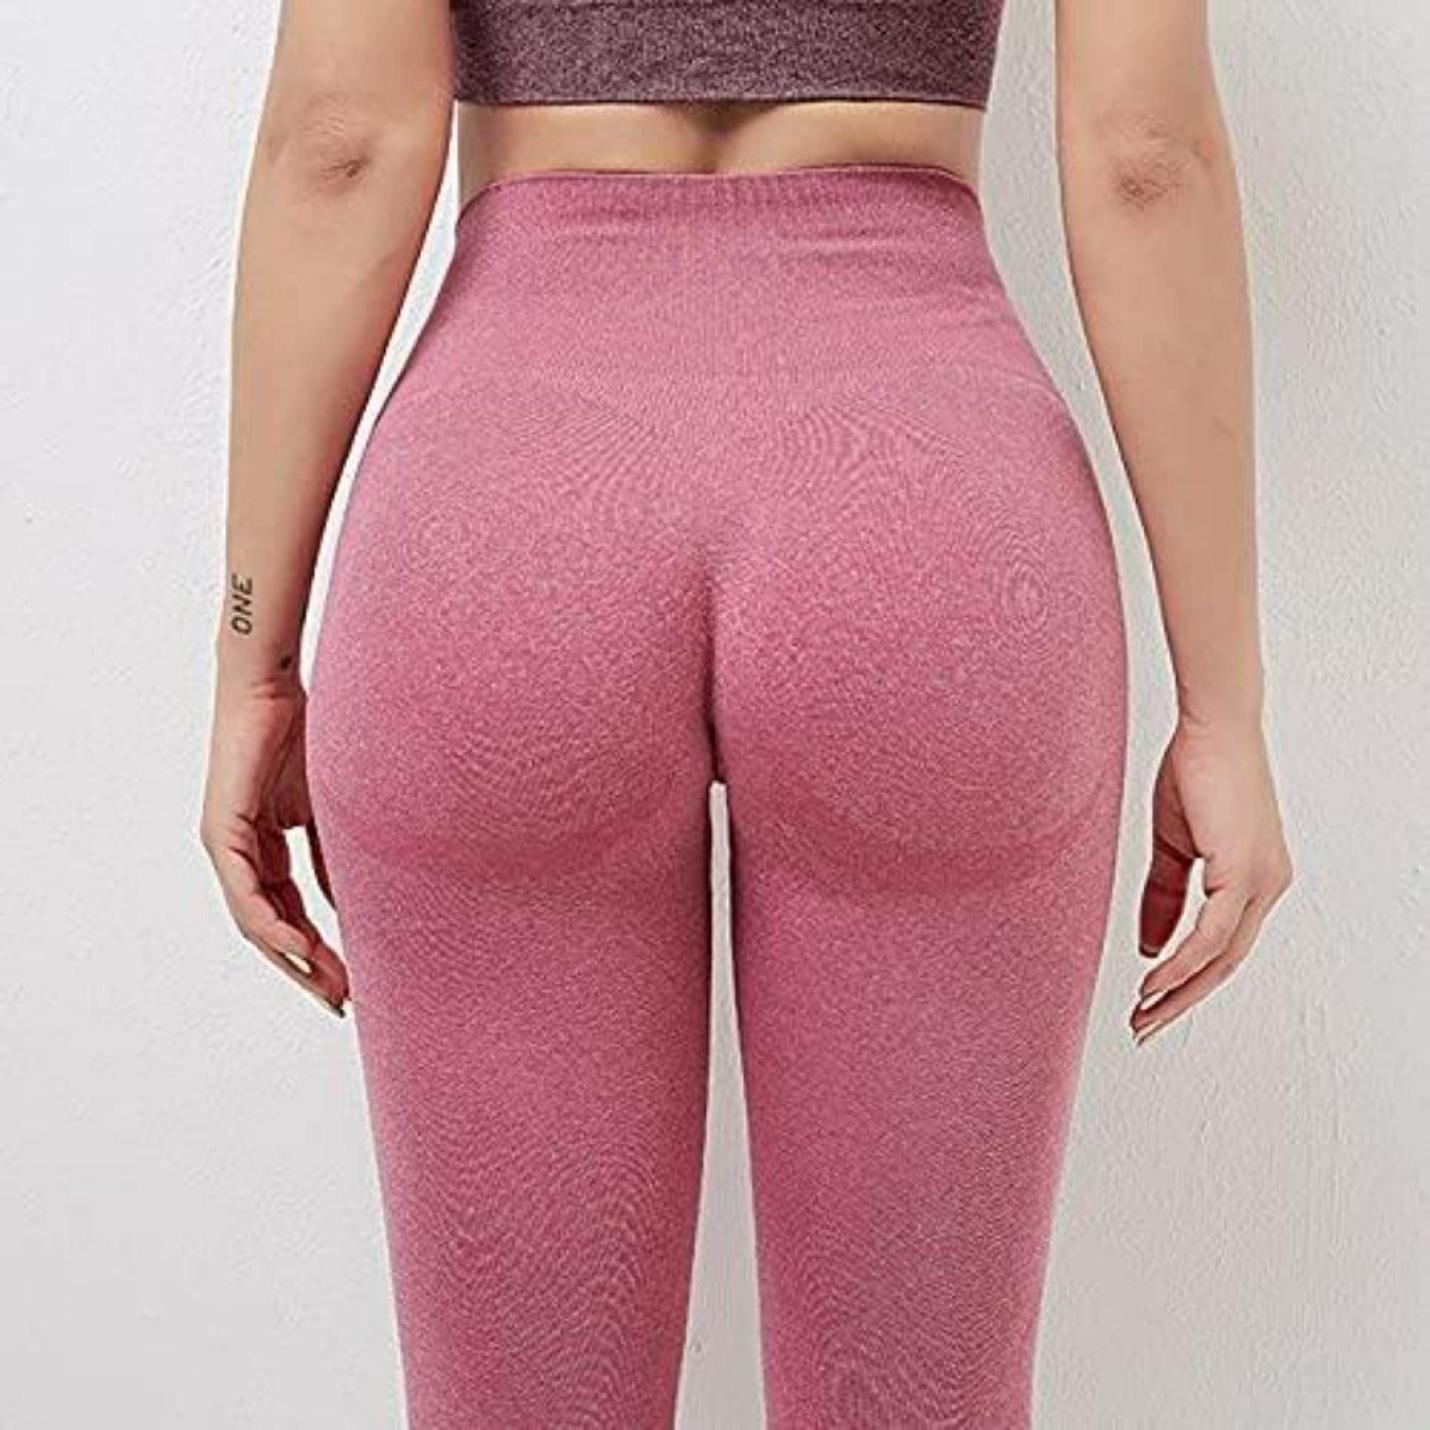 Naadloze yoga leggings voor dames met booty lifting en push-up effect voor een mooie vorm